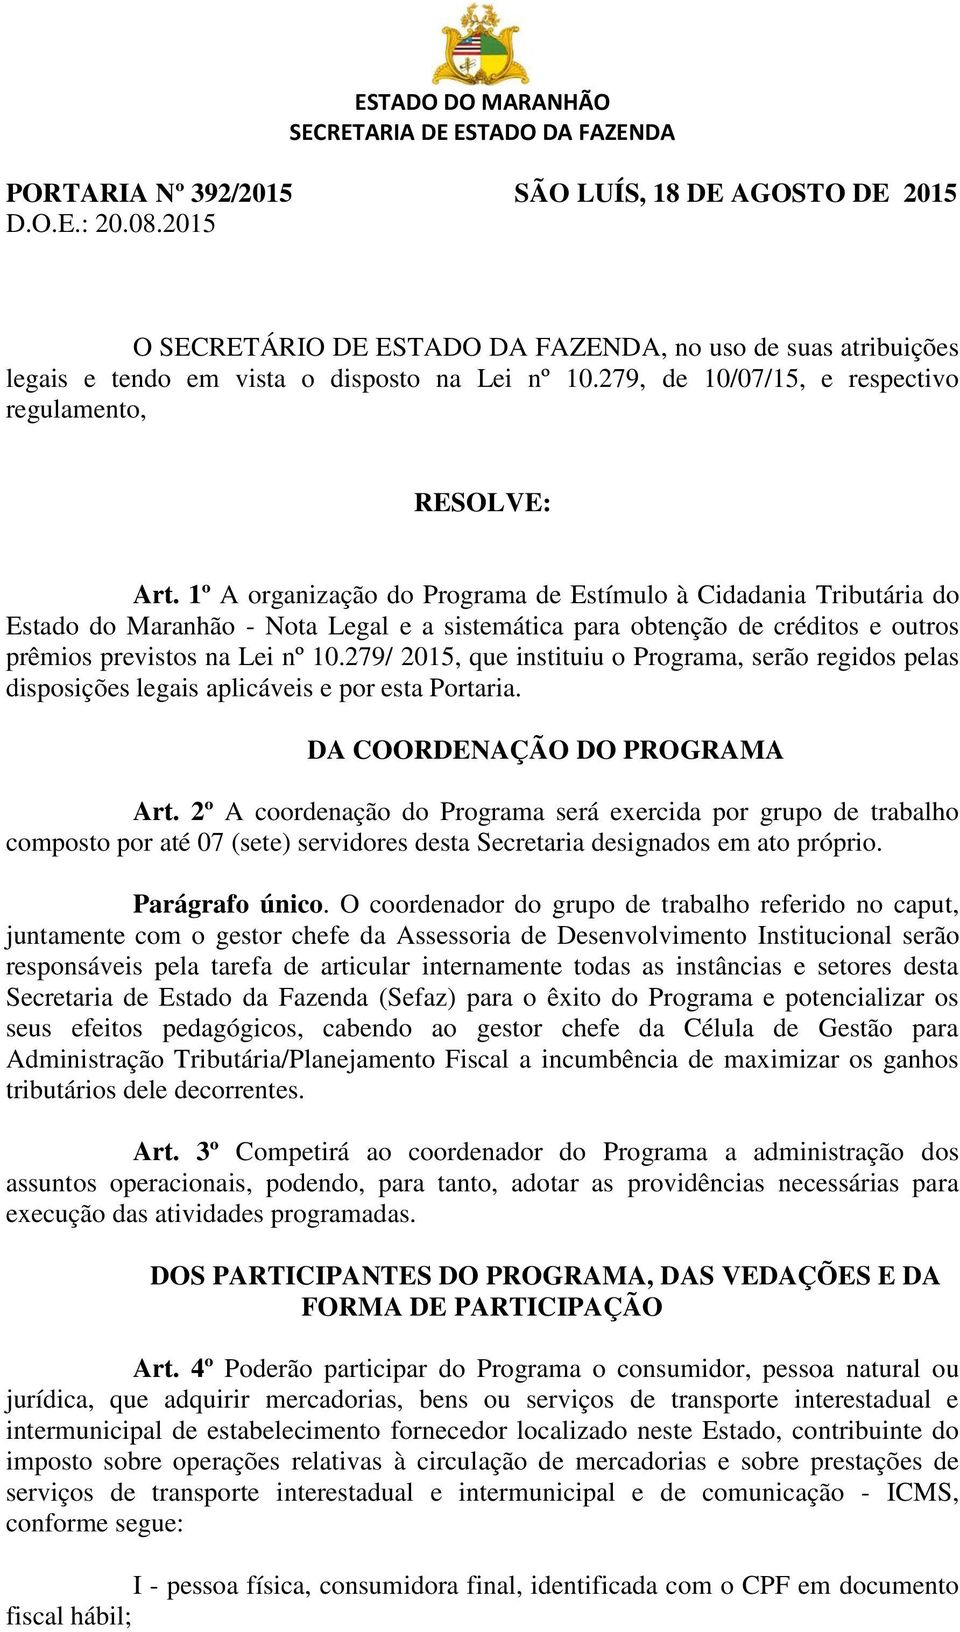 1º A organização do Programa de Estímulo à Cidadania Tributária do Estado do Maranhão - Nota Legal e a sistemática para obtenção de créditos e outros prêmios previstos na Lei nº 10.